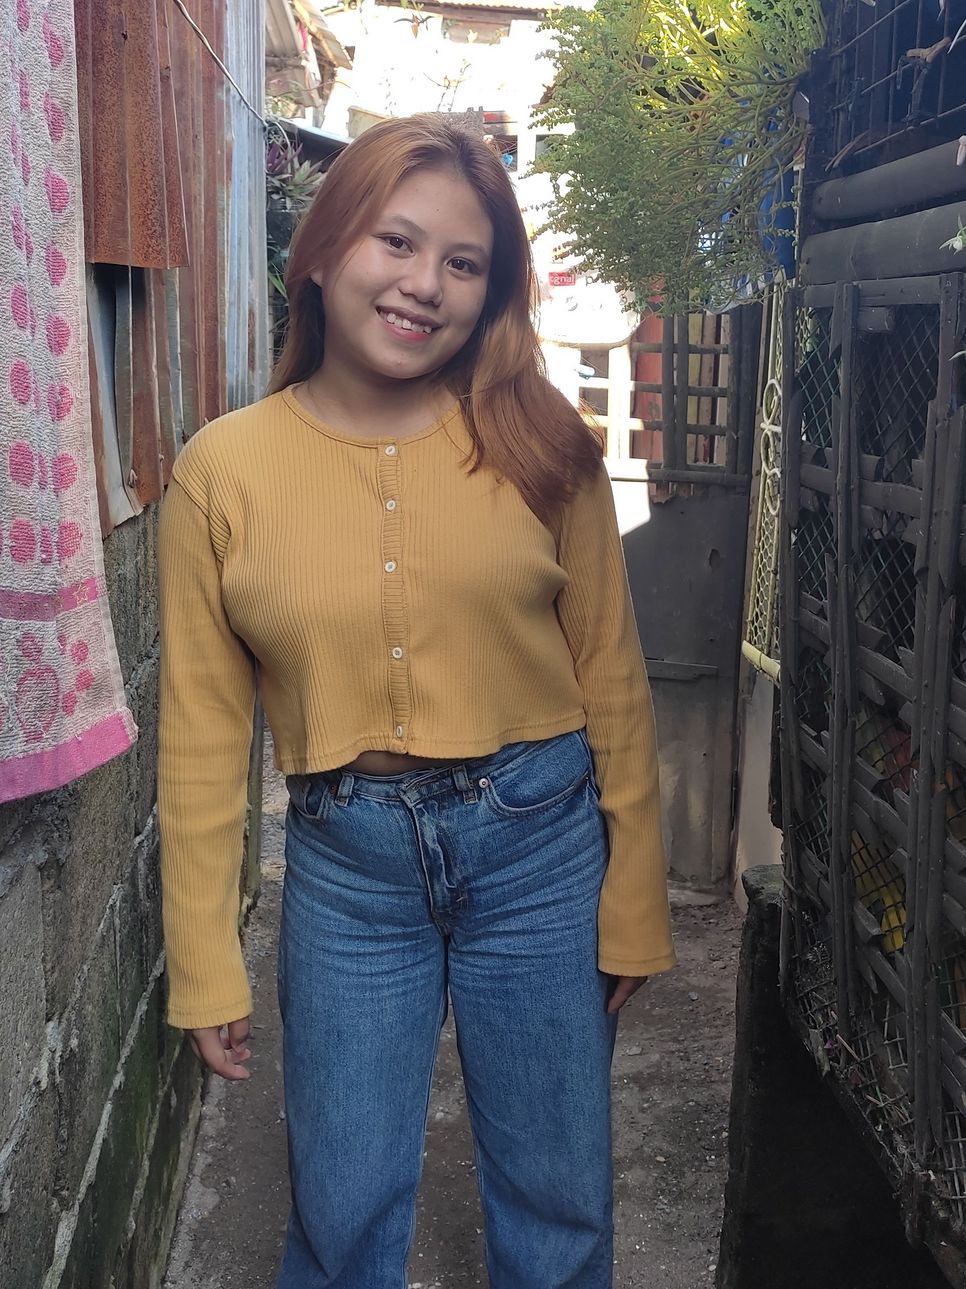 Eine junge Frau in Jeans und einem gelben Pullover lächelt.